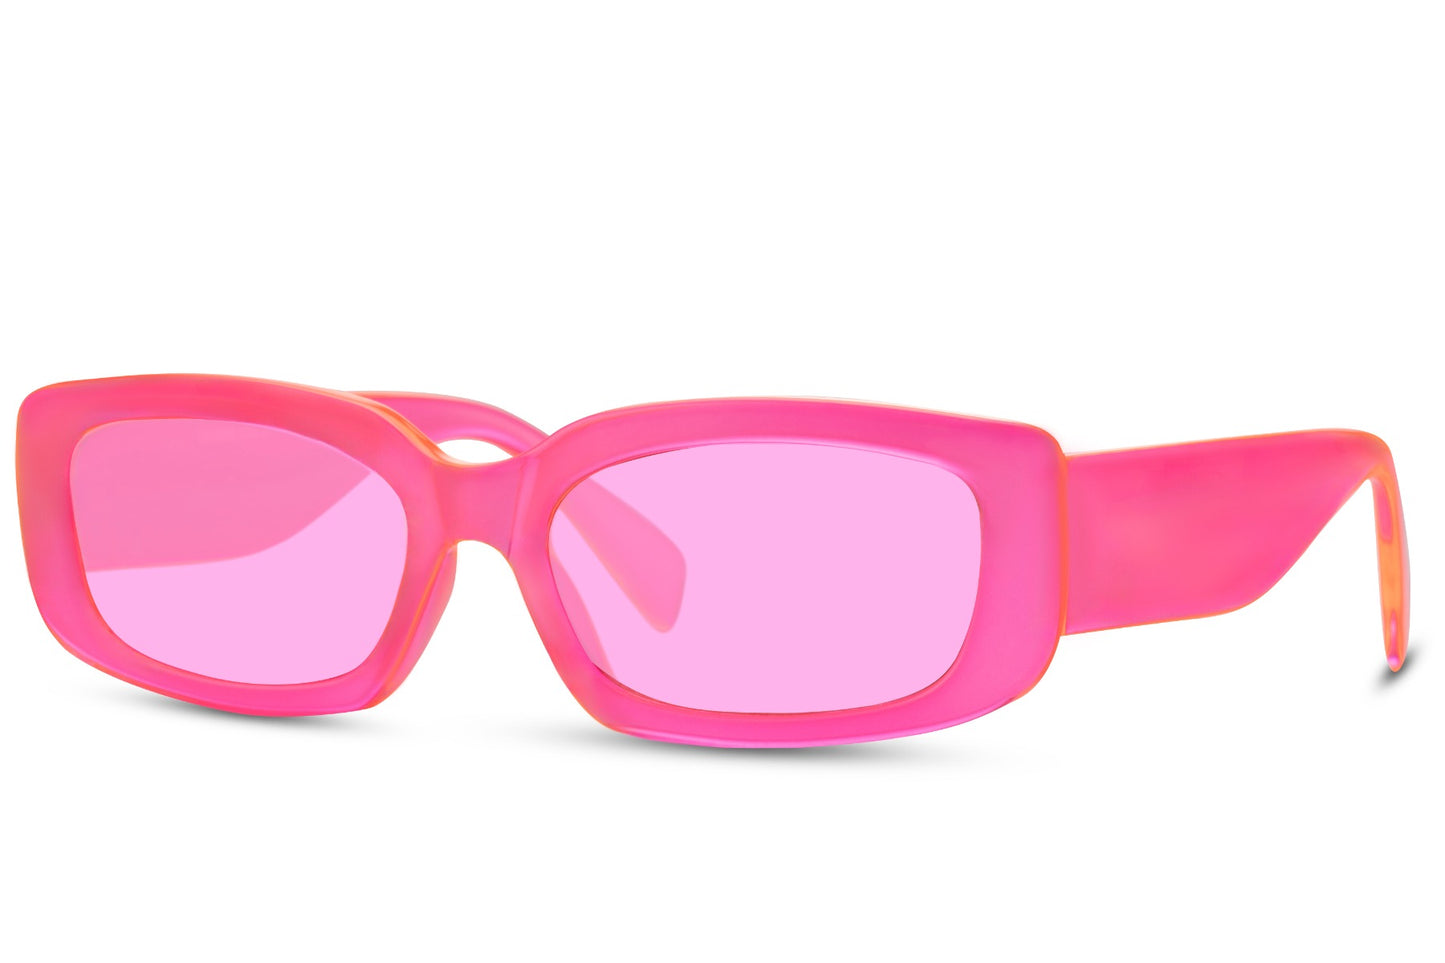 Party Wear Pink Sunglasses Women